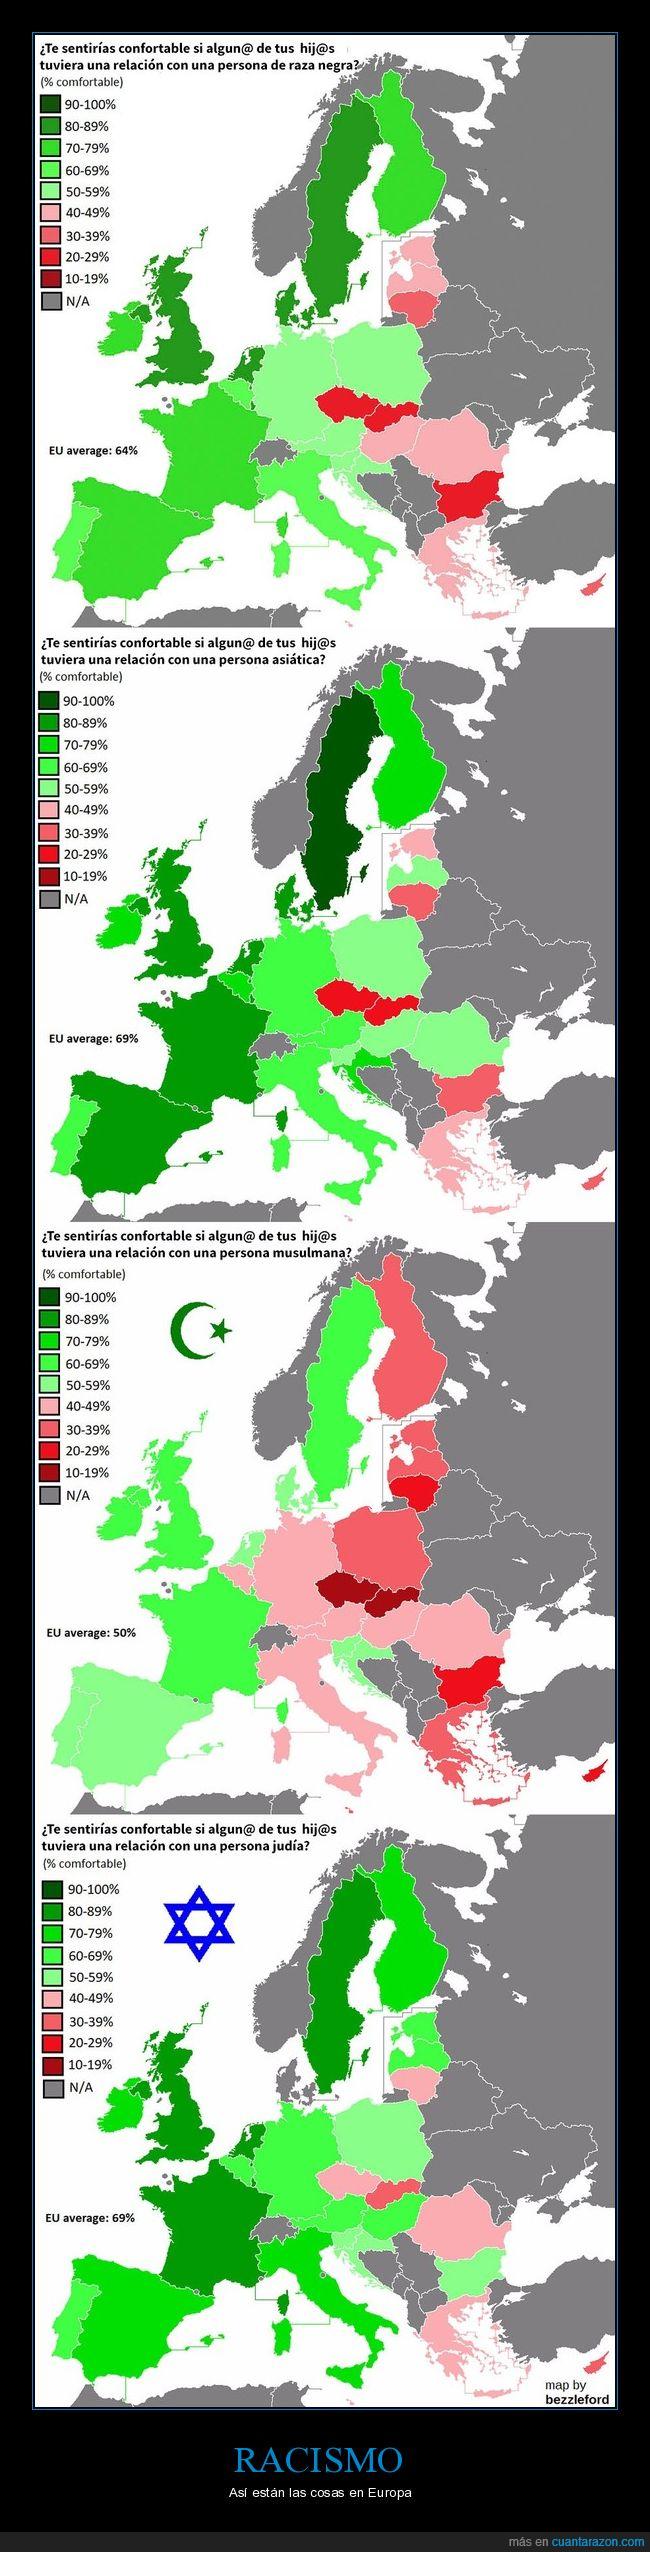 racismo,europa,países racistas